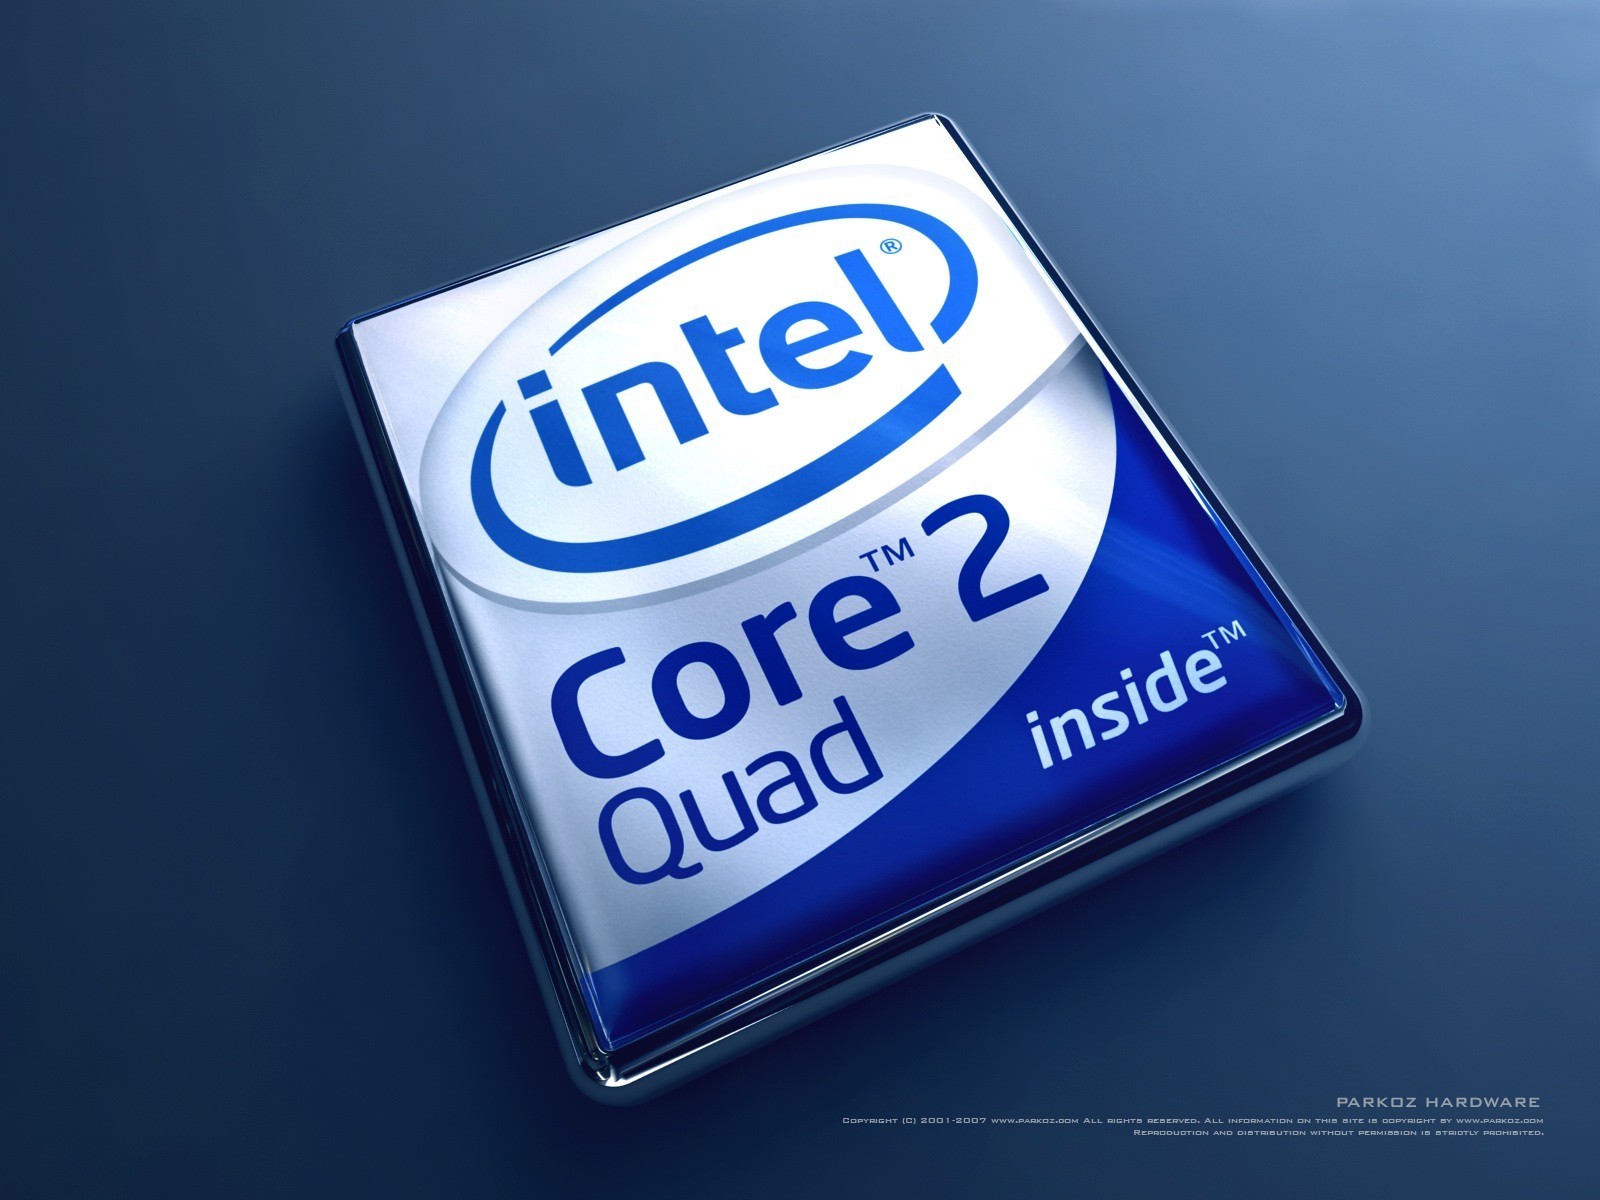 Что делает интел. Intel Core 2 Duo inside. Интел Core 2 Duo. Intel Core 2 Duo logo. Процессор Intel Core 2 Quad.